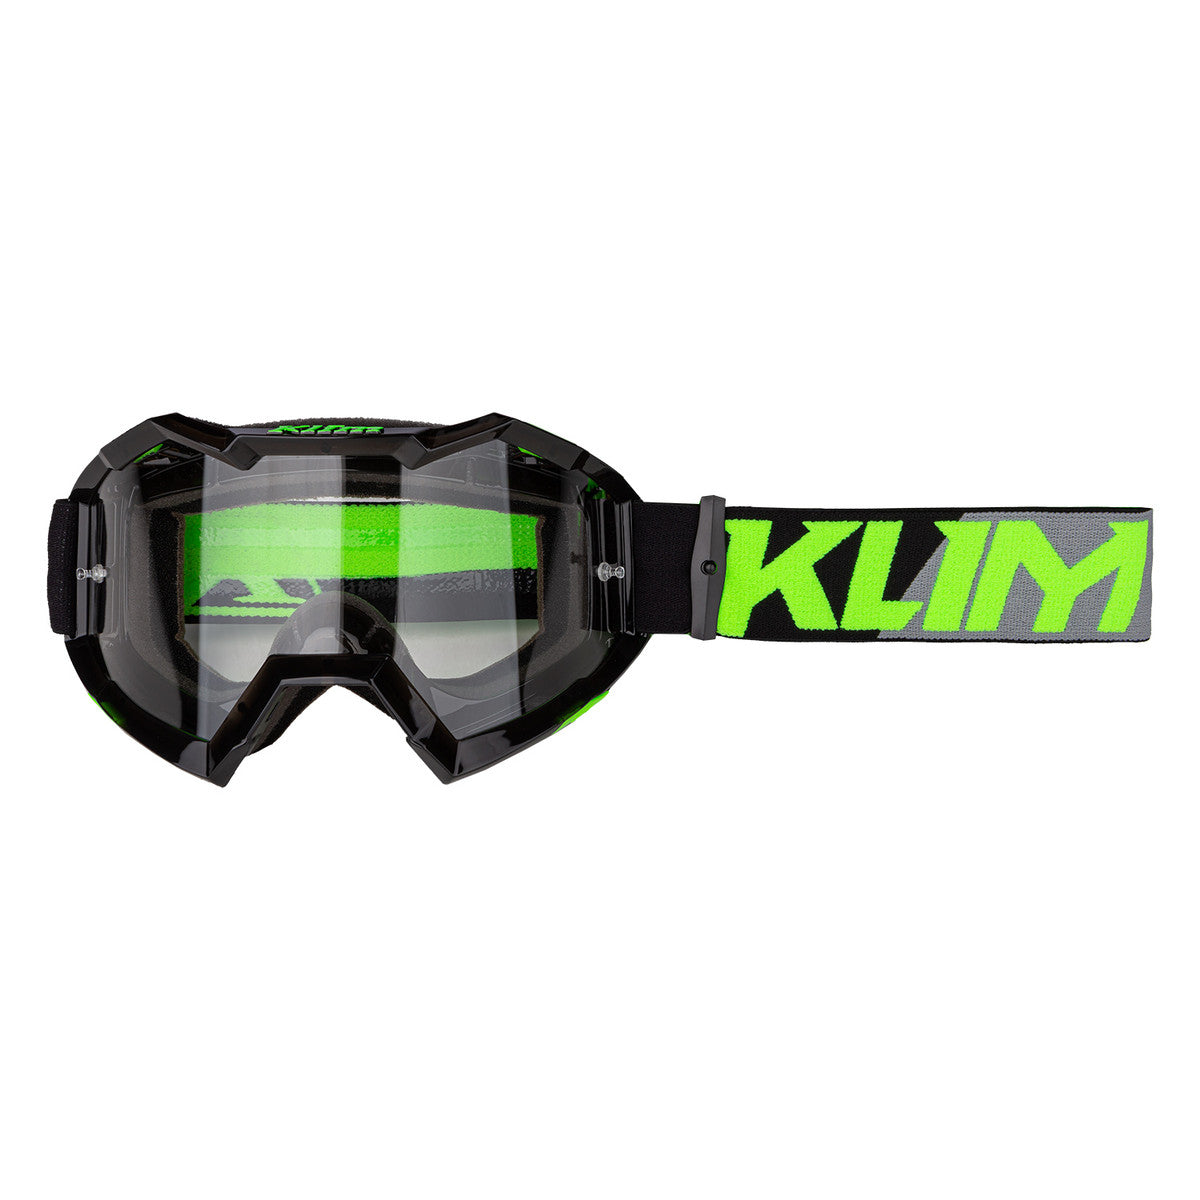 Klim Viper Off-Road XC Electrik Gecko Clear Lens Goggle